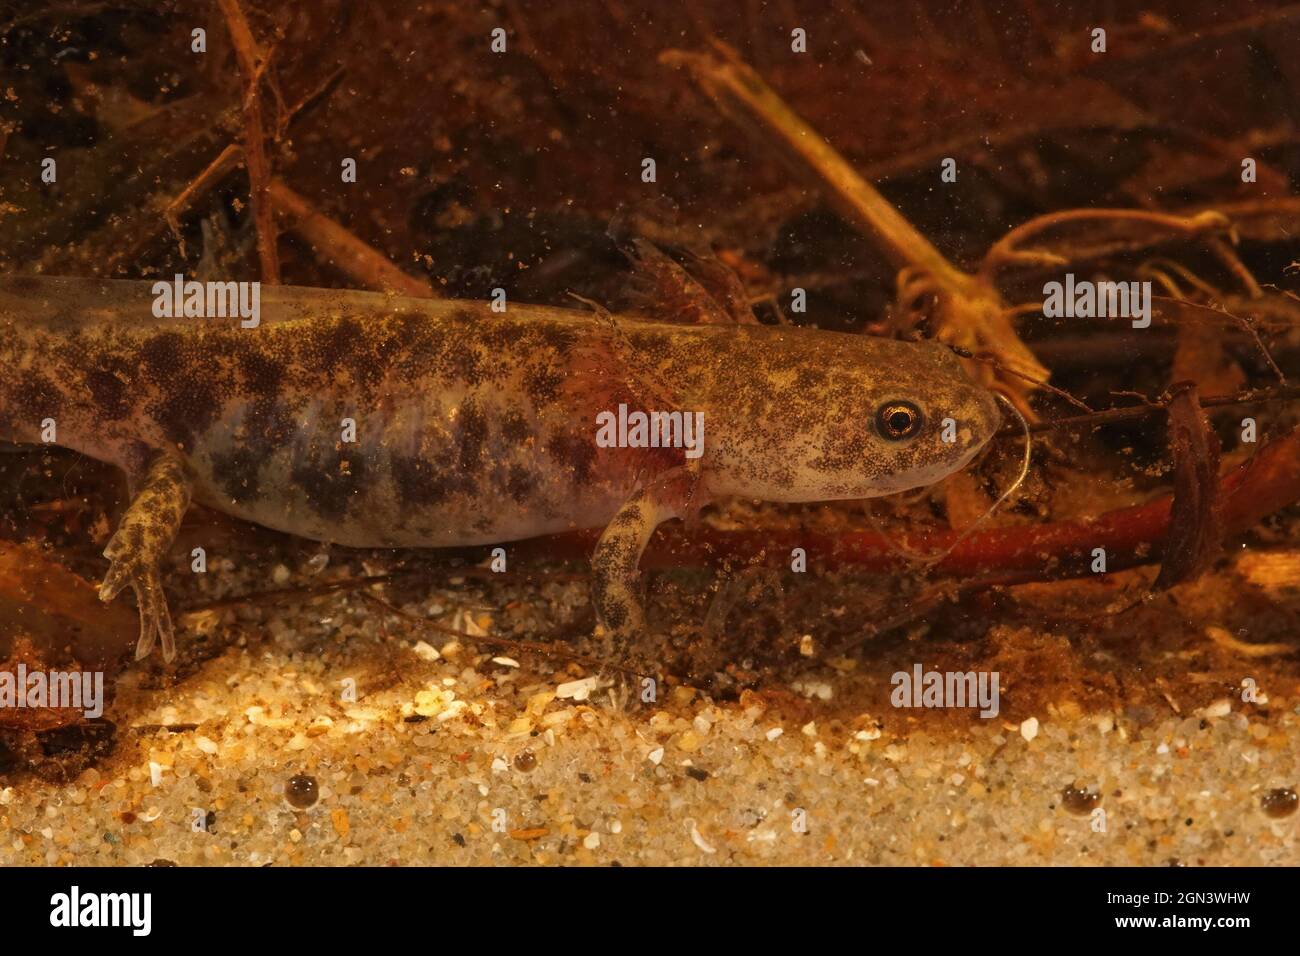 Closeup on a larvae of the endemic Hokkaido salamander, Hynobius retardatus Stock Photo